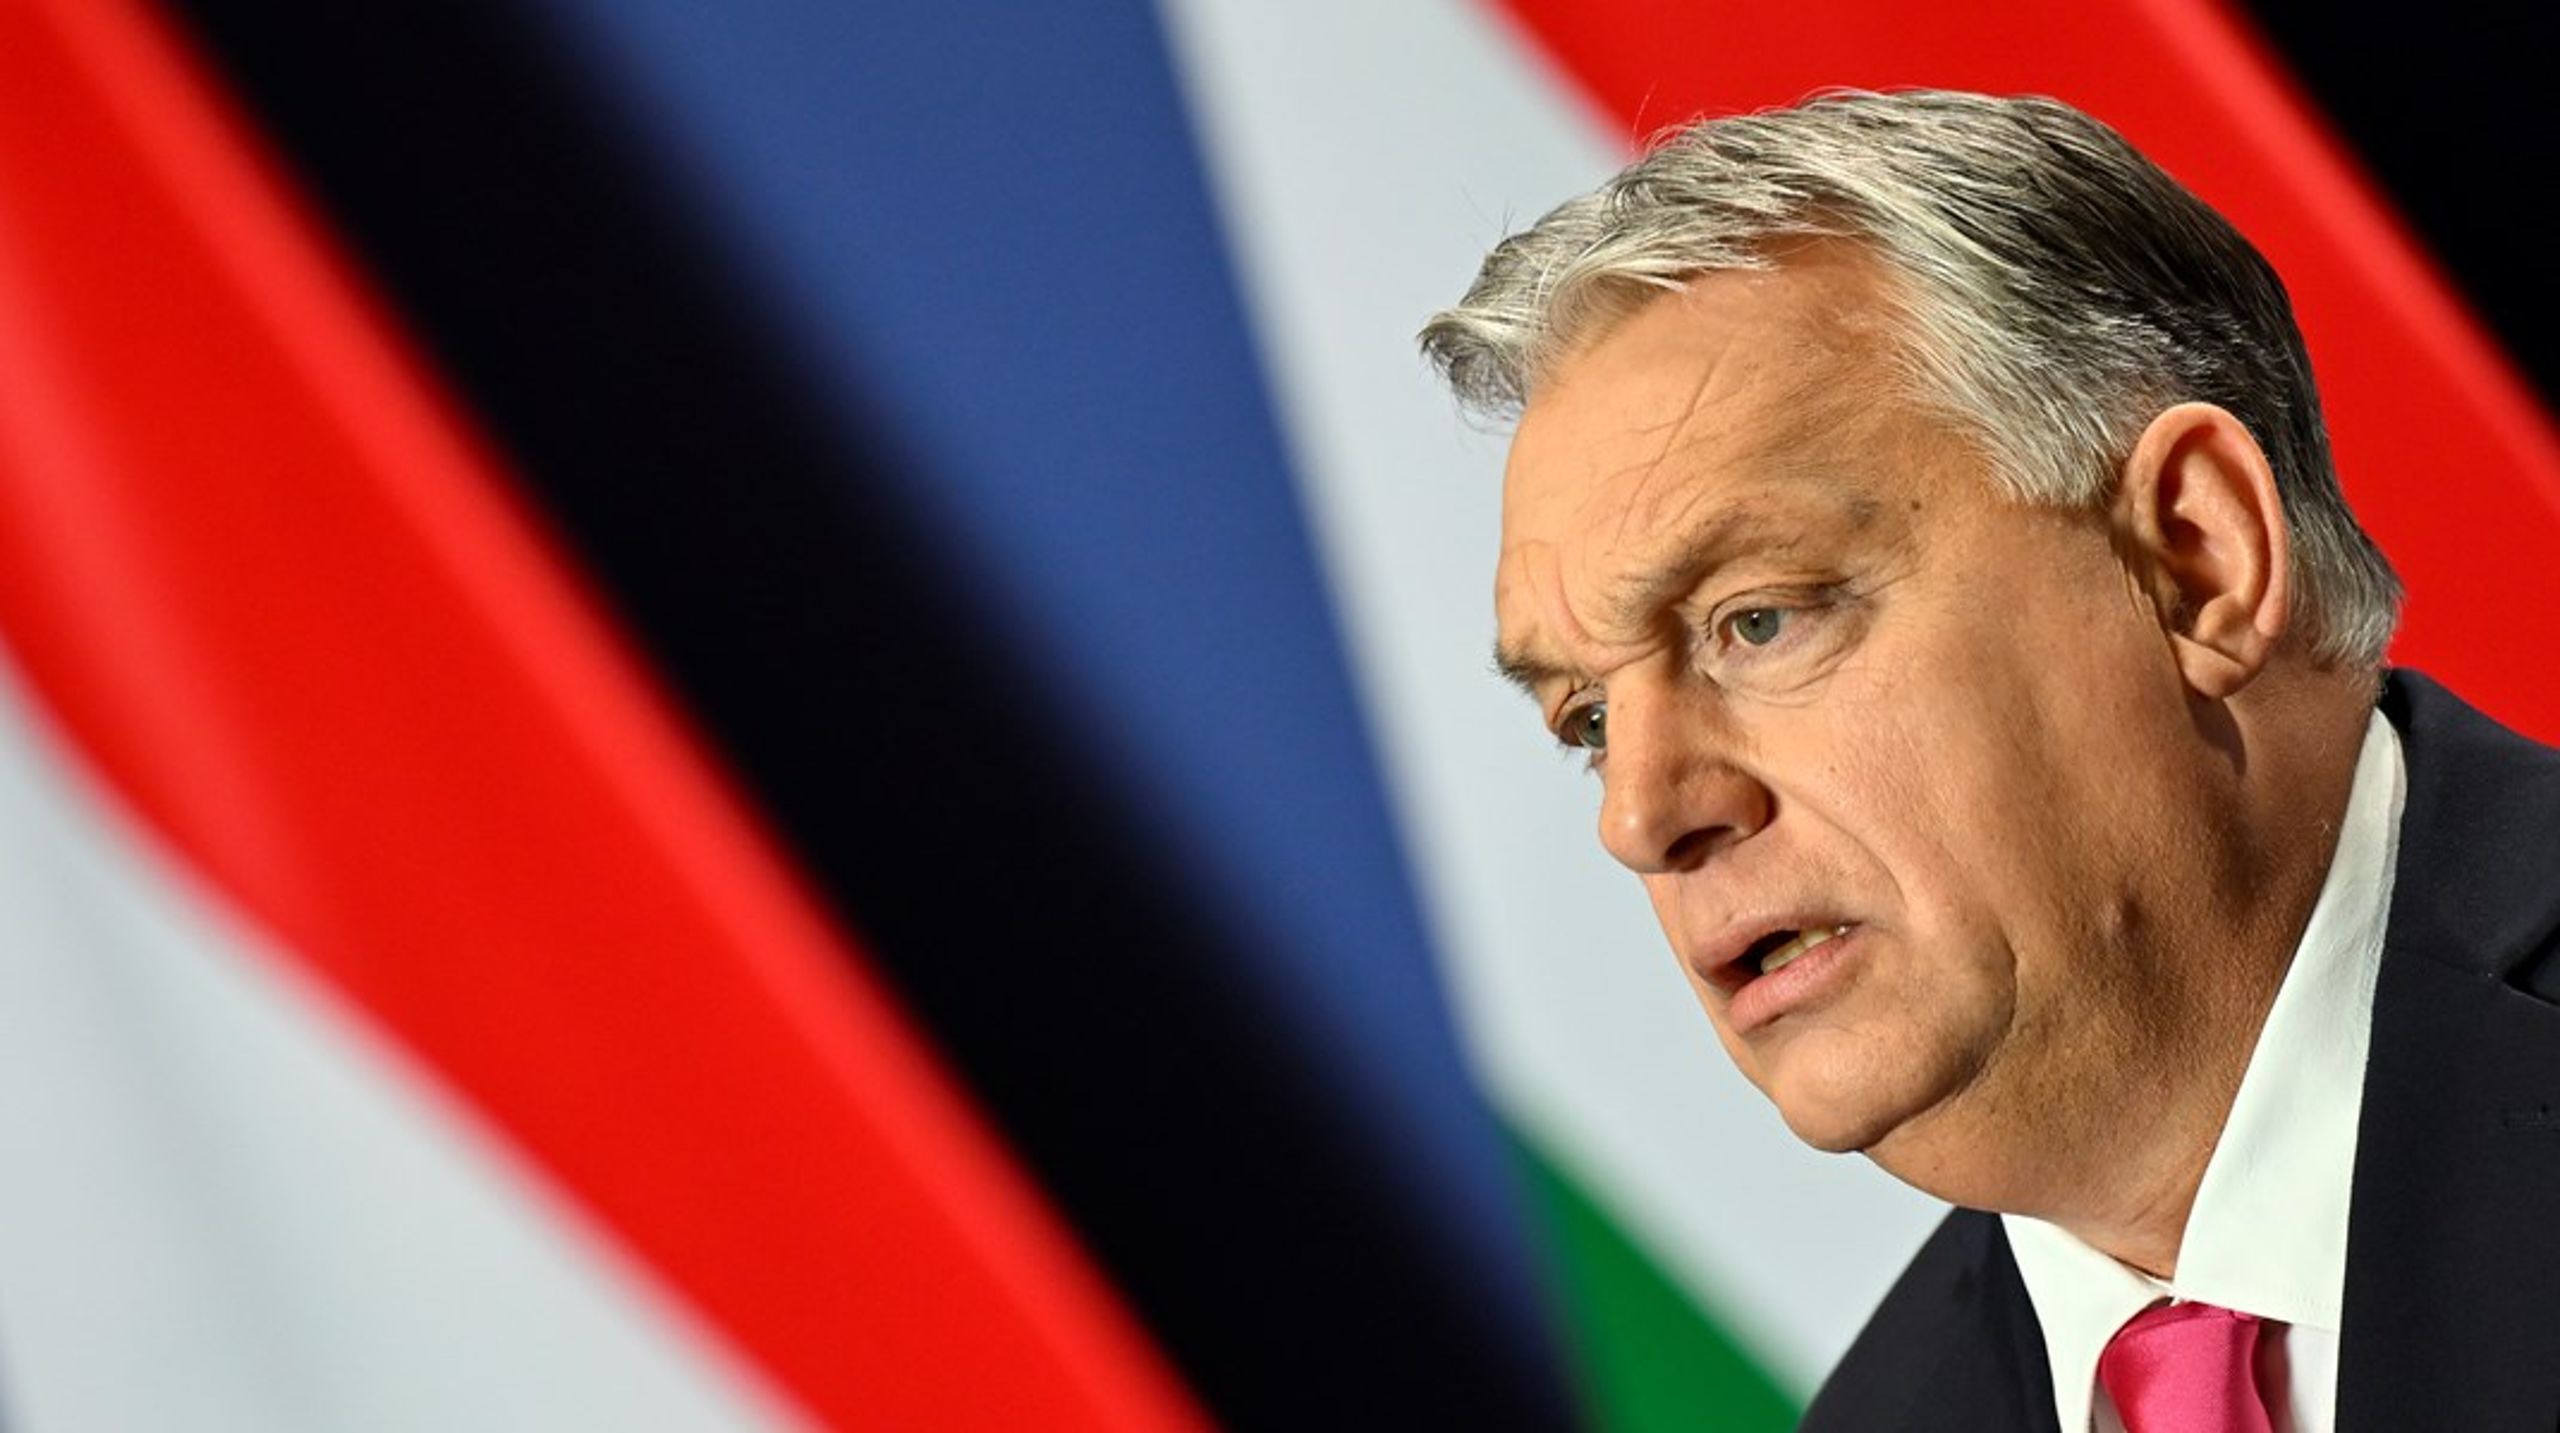 Den ungarske premierminister Viktor Orbán kommer under massivt pres ved et topmøde i Bruxelles torsdag. Men vil han give sig?